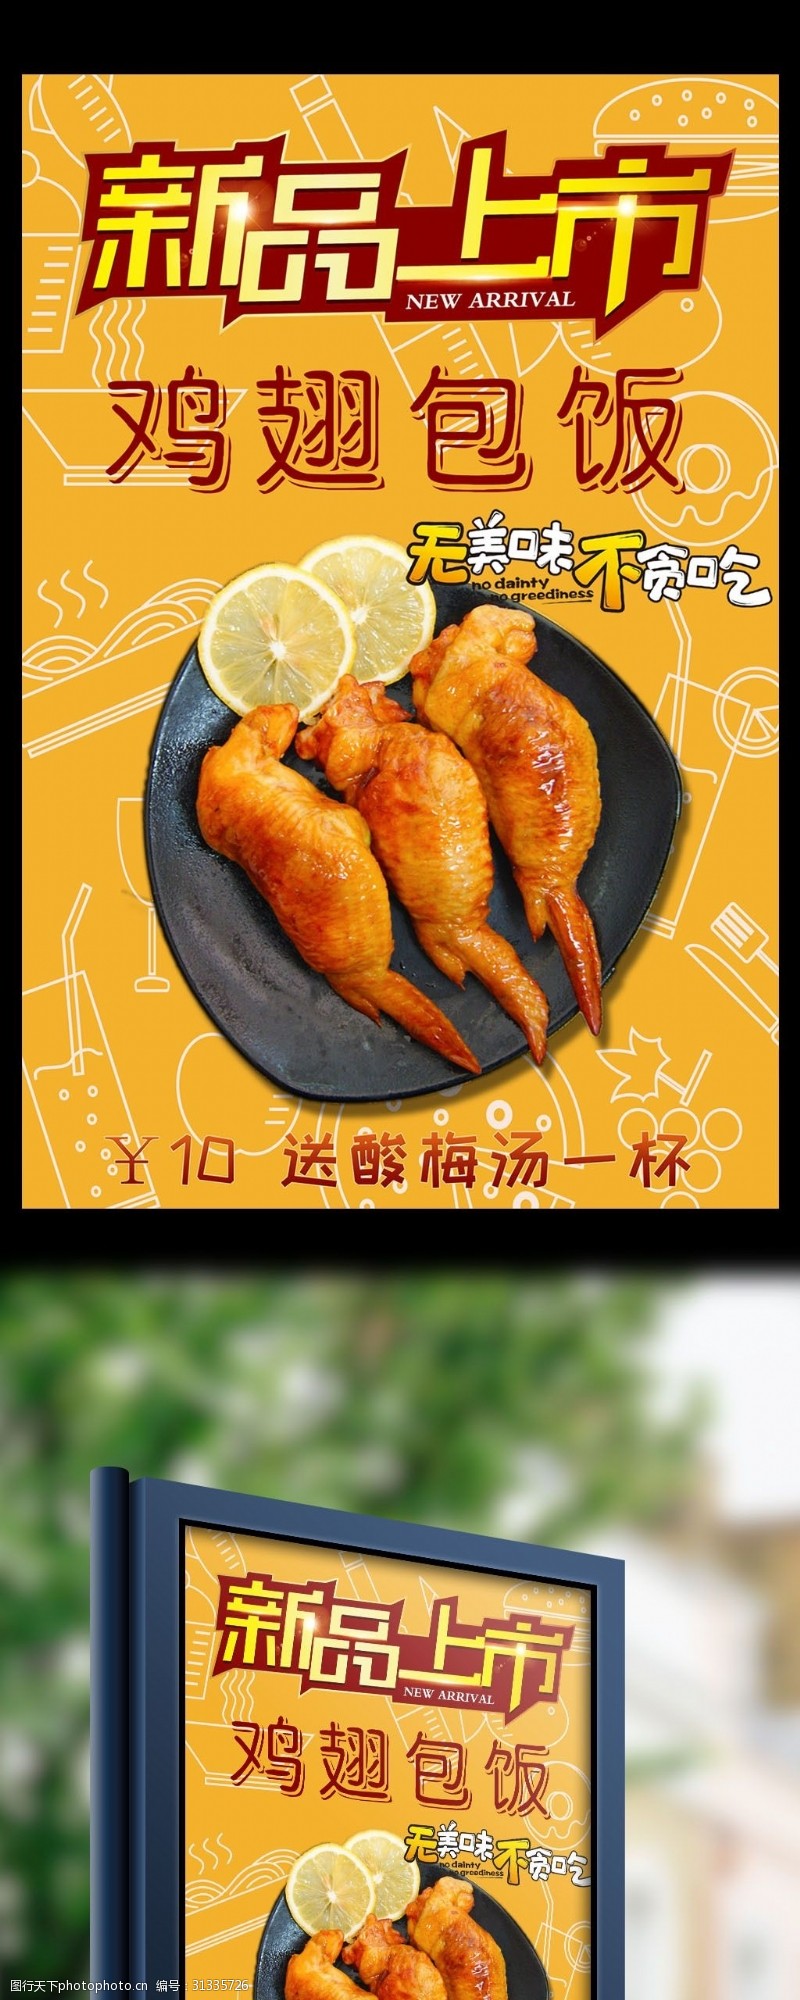 清新活力橙色快餐餐饮鸡翅包饭宣传海报